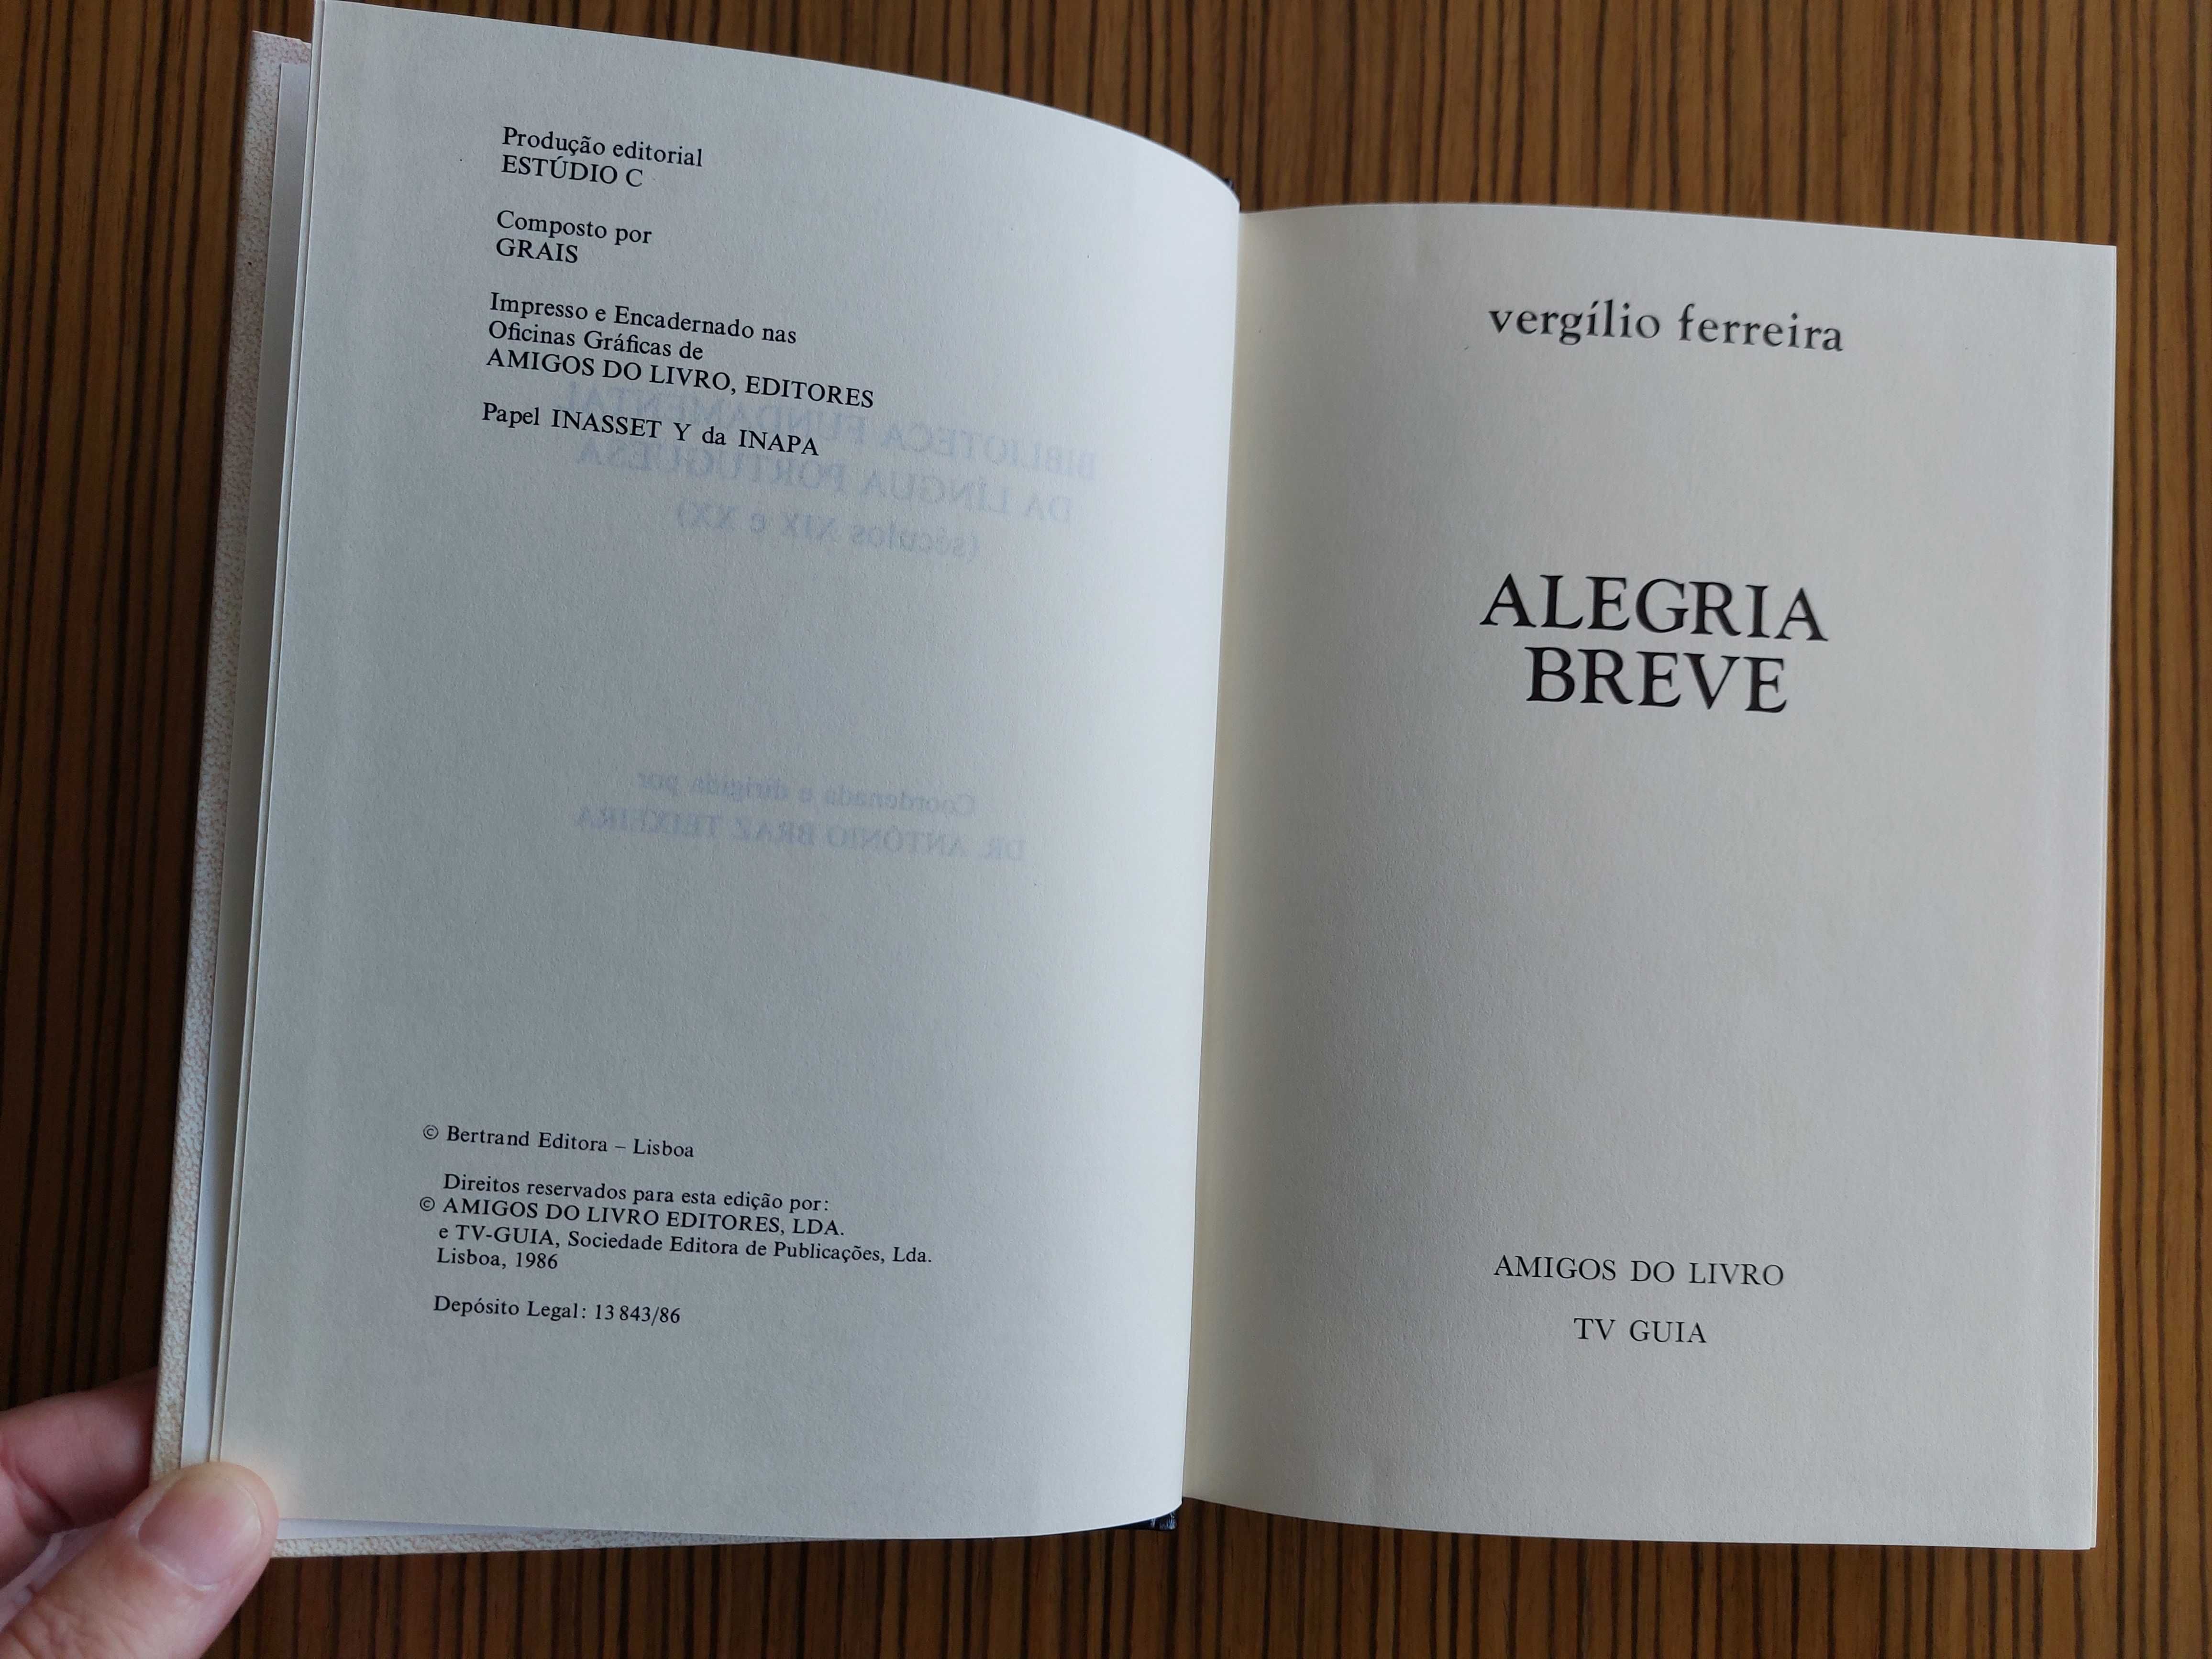 Livros Vergílio Ferreira